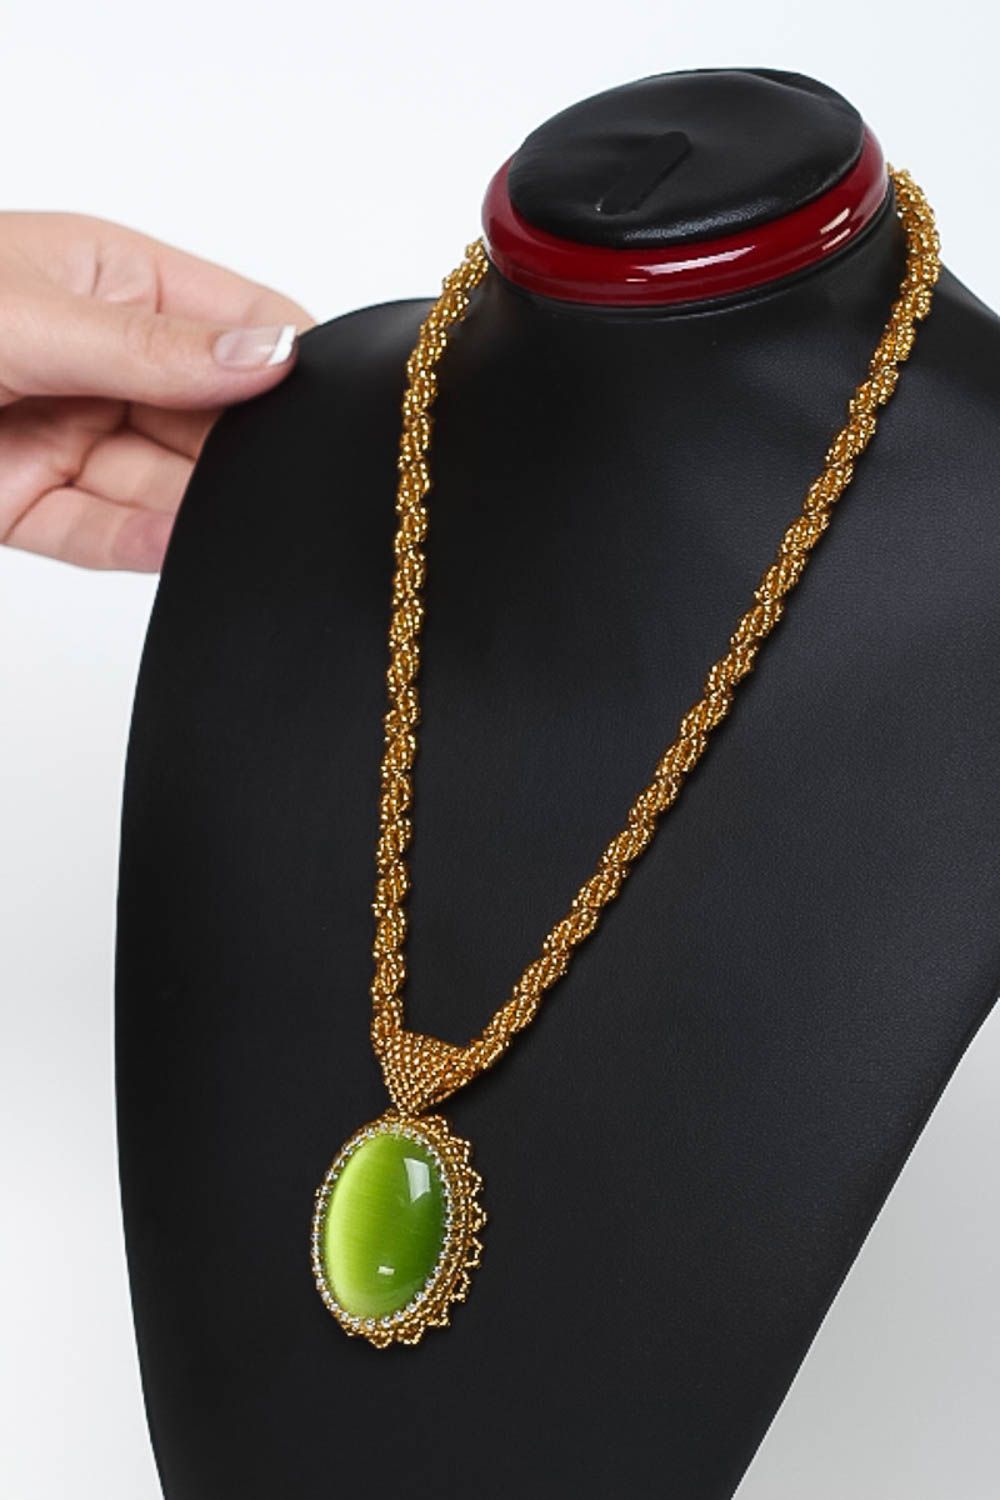 Stylish handmade beaded necklace gemstone pendant necklace bead weaving photo 5